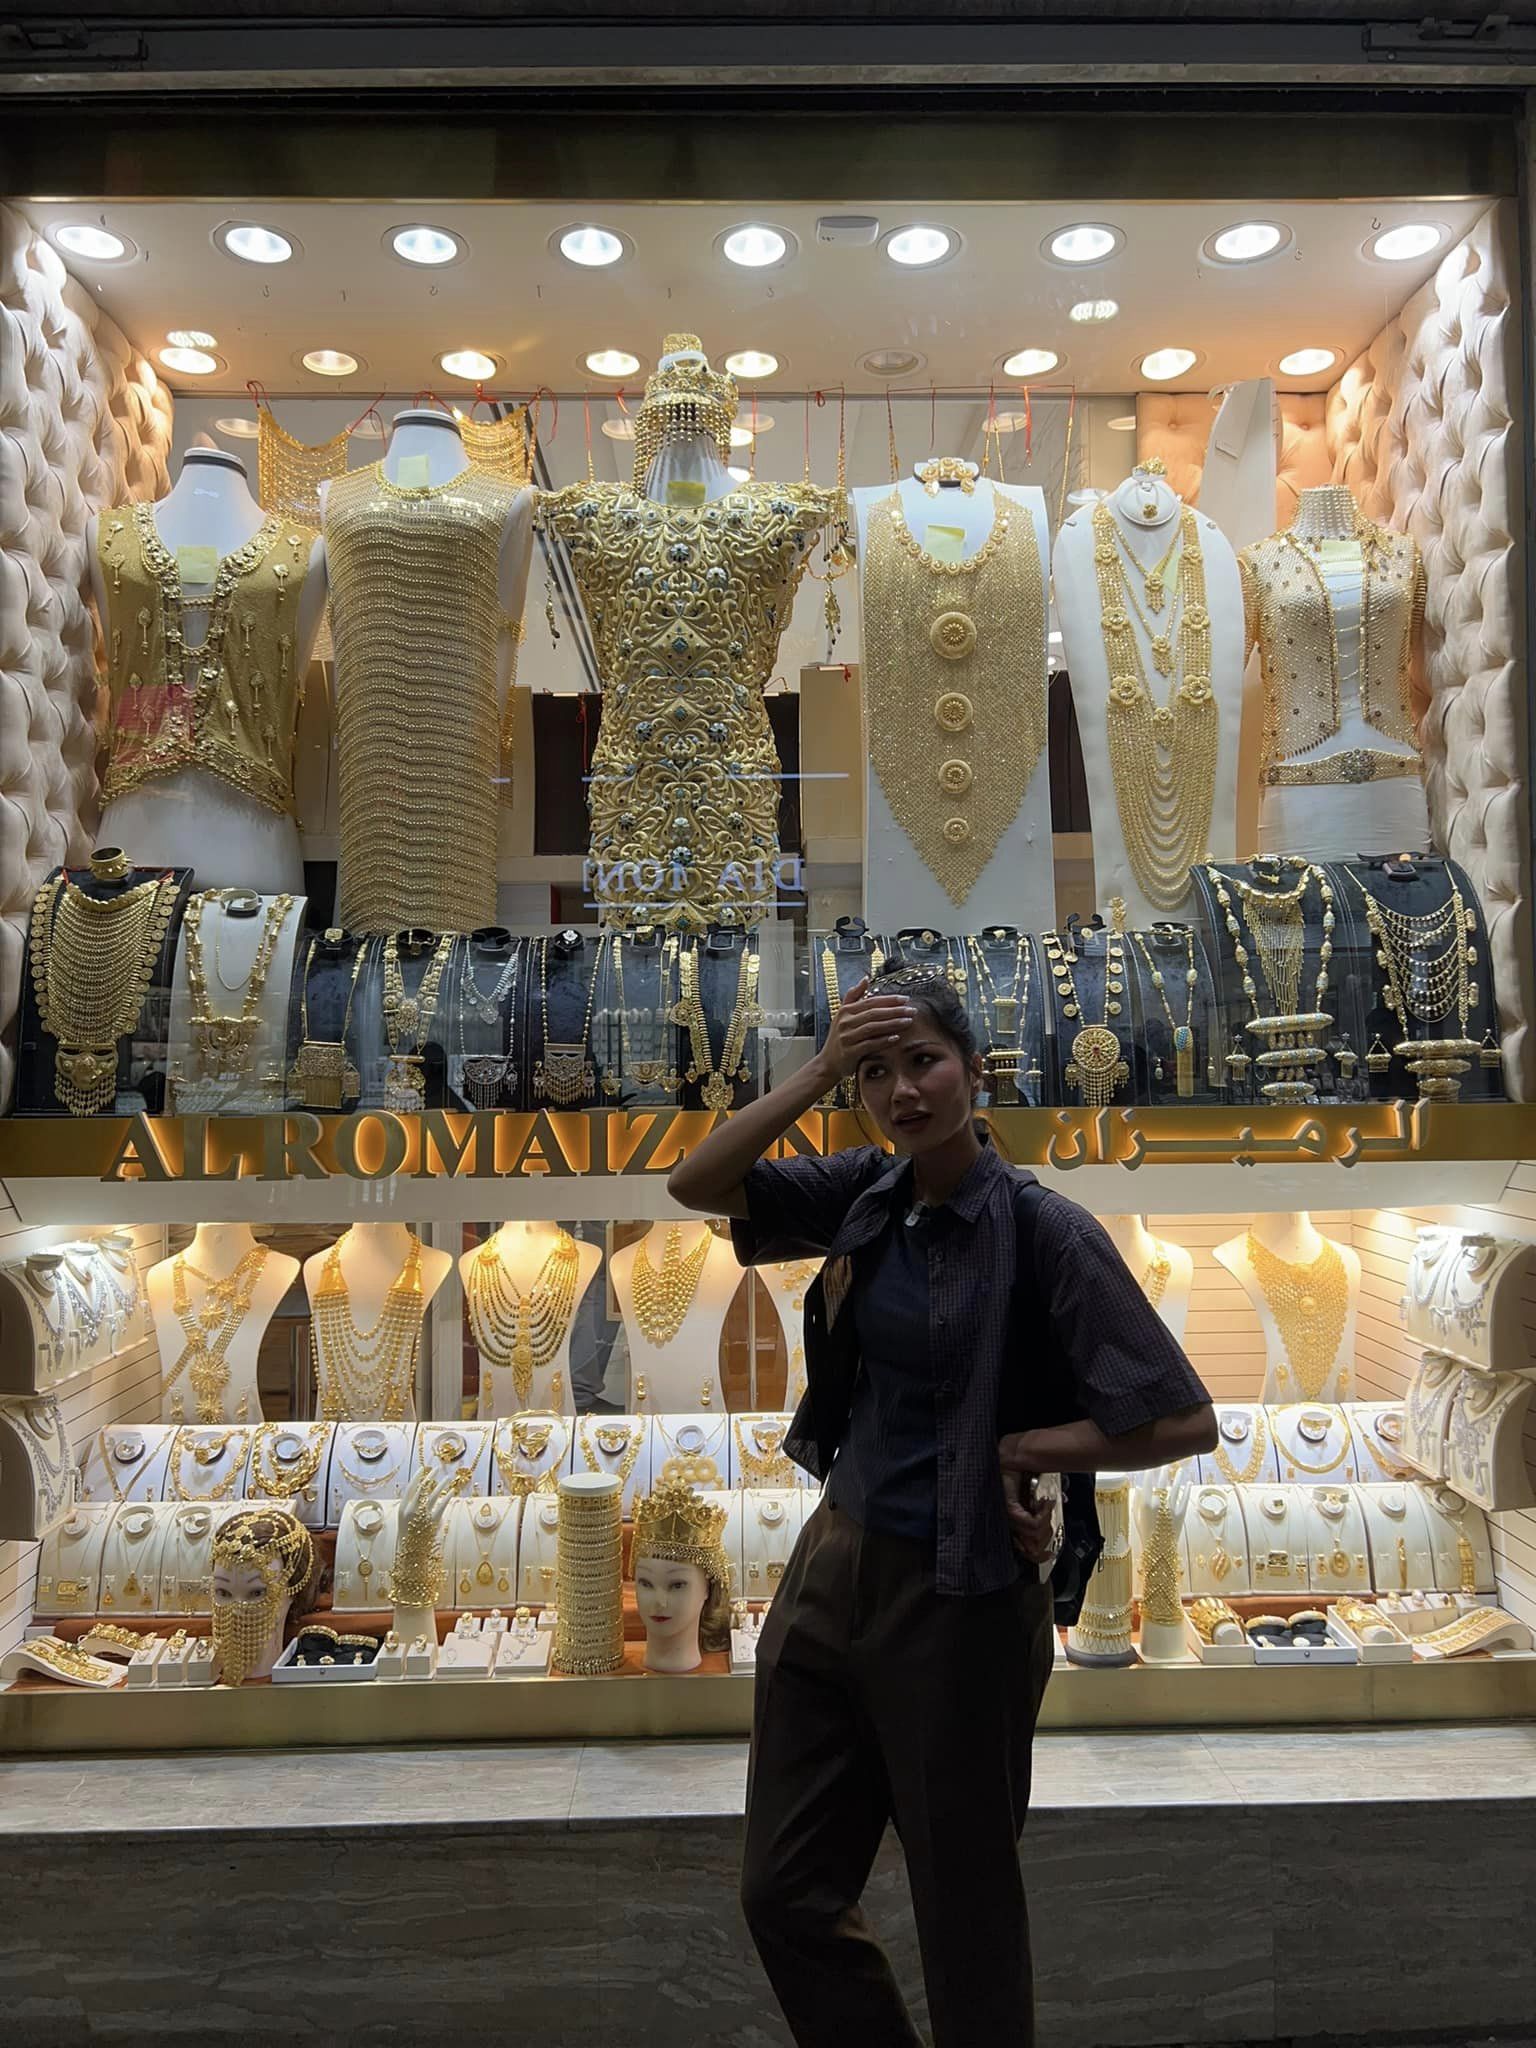 H'Hen Niê đi dạo chợ vàng ở Dubai, 'chốt đơn' sương sương 2 chiếc nhẫn vàng